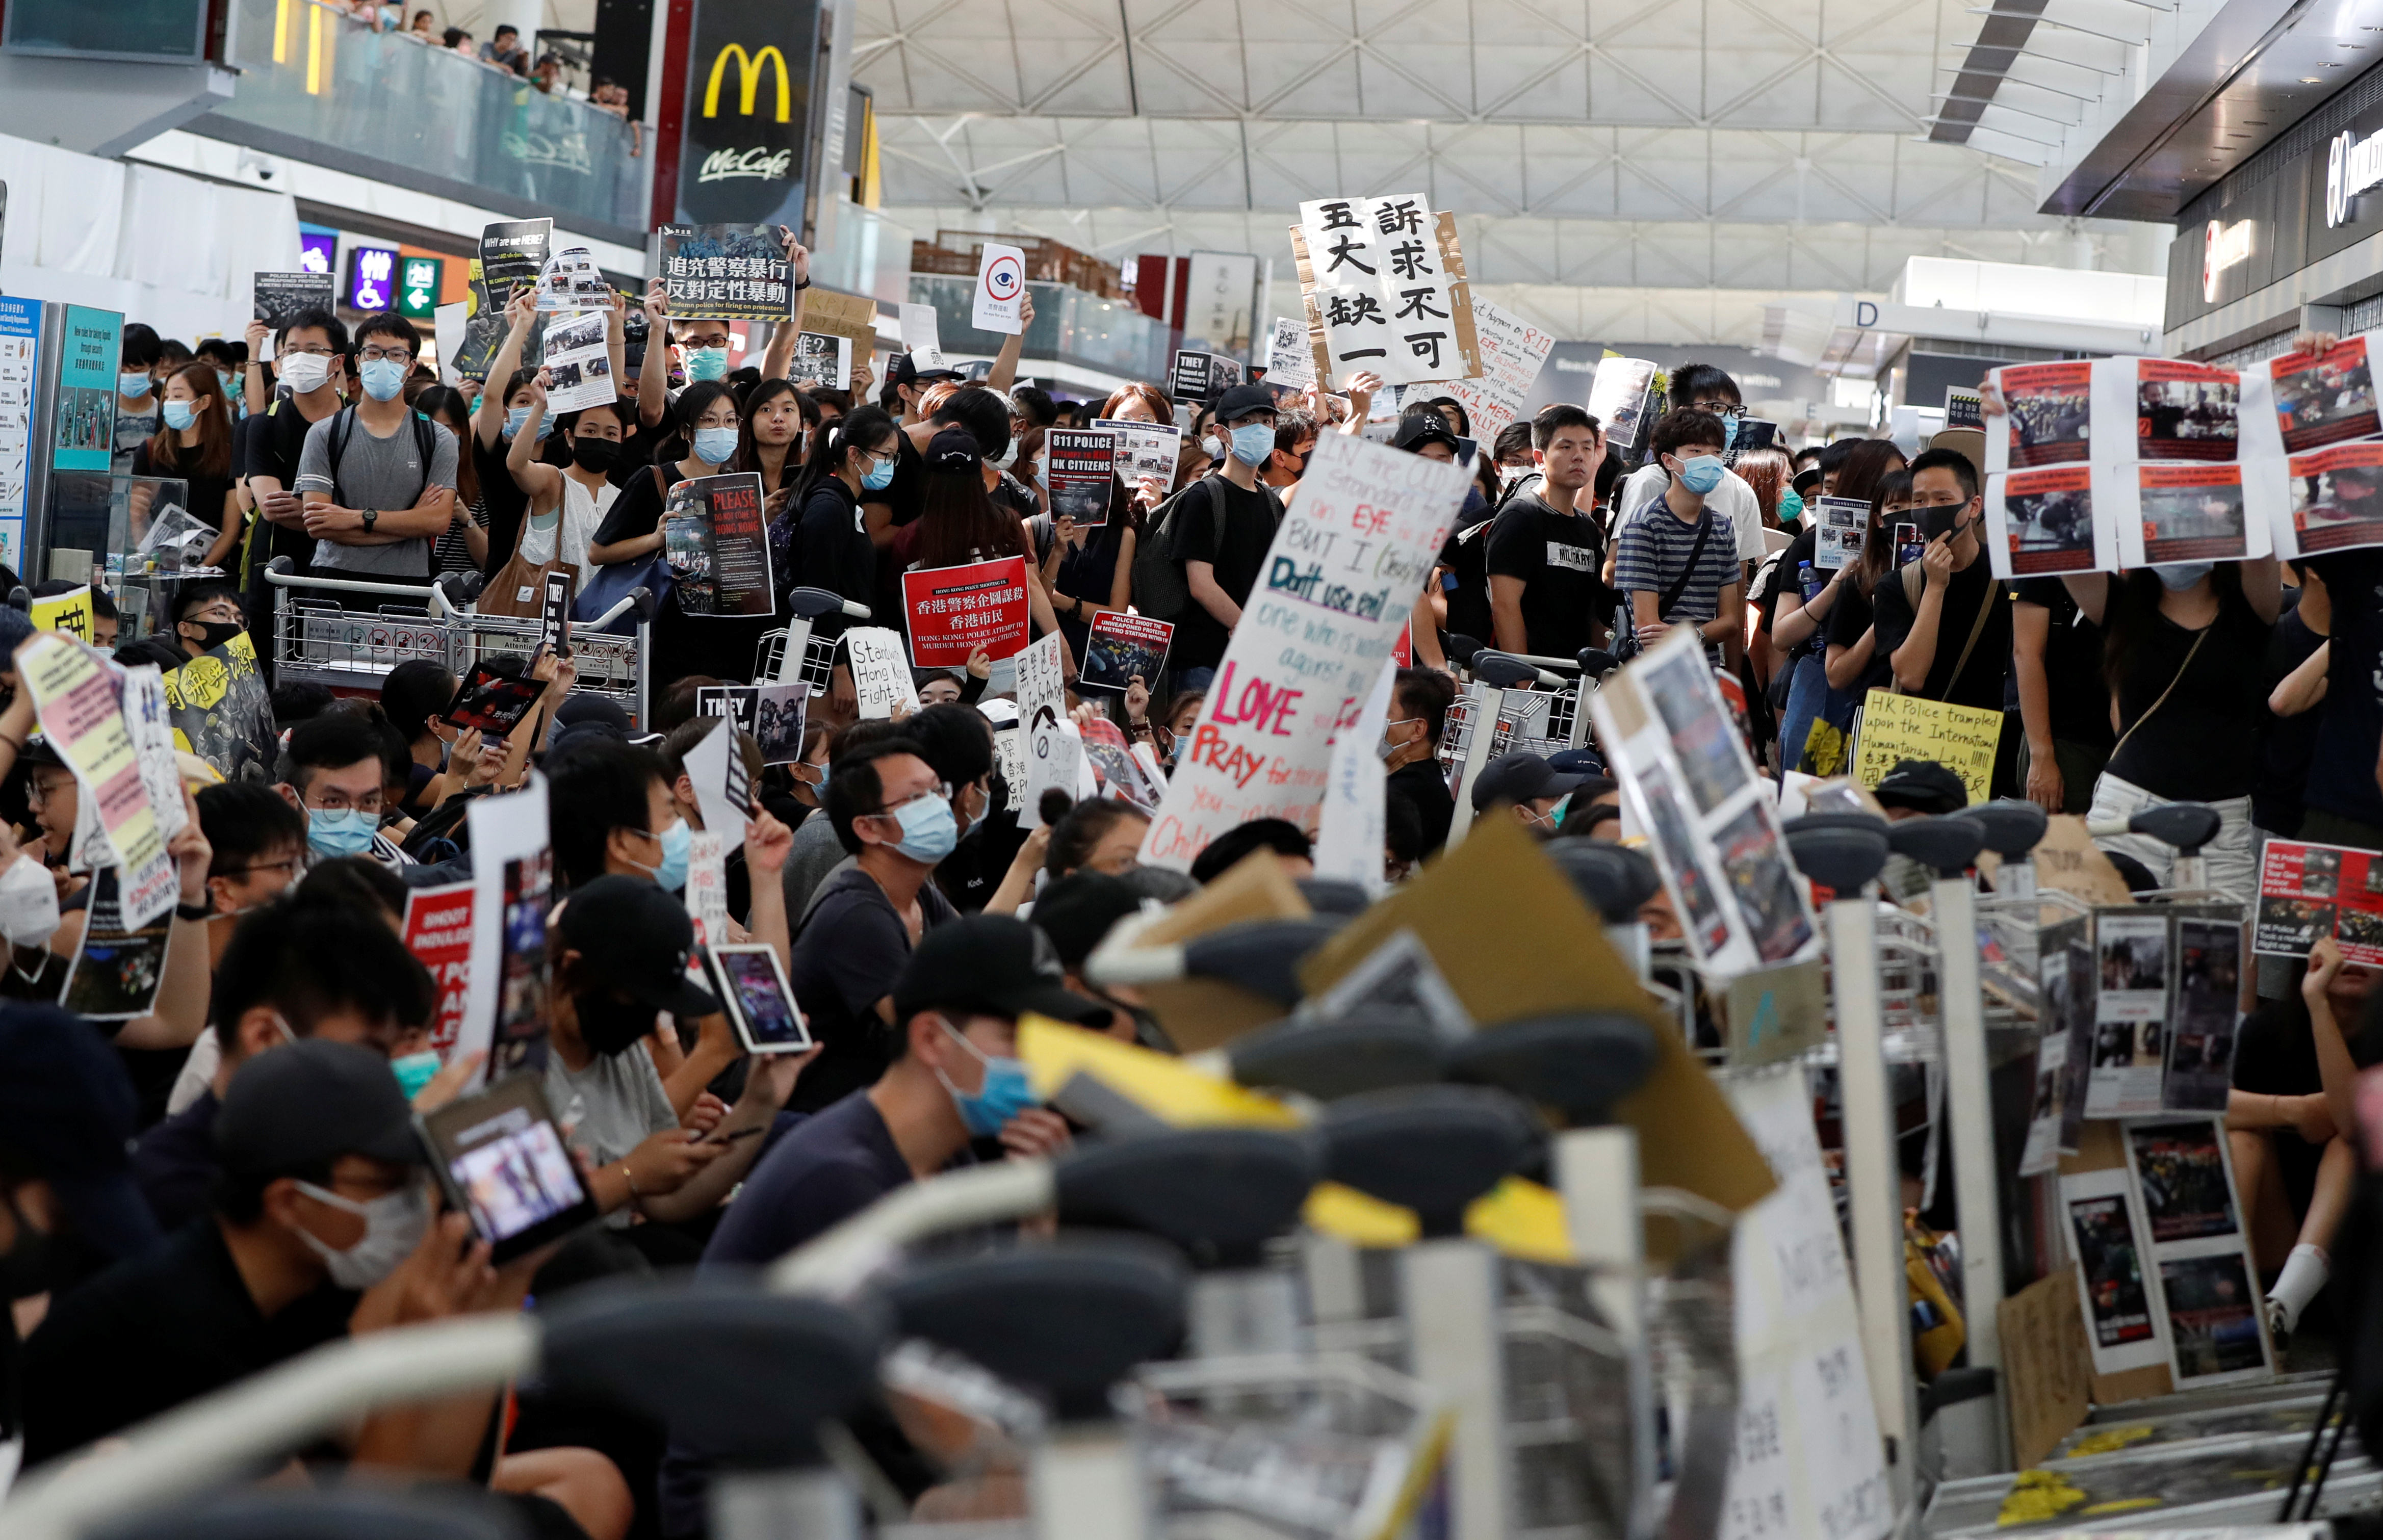 Trump recomienda a Xi Jinping que se reúna con manifestantes Hong Kong para que haya “un final feliz”